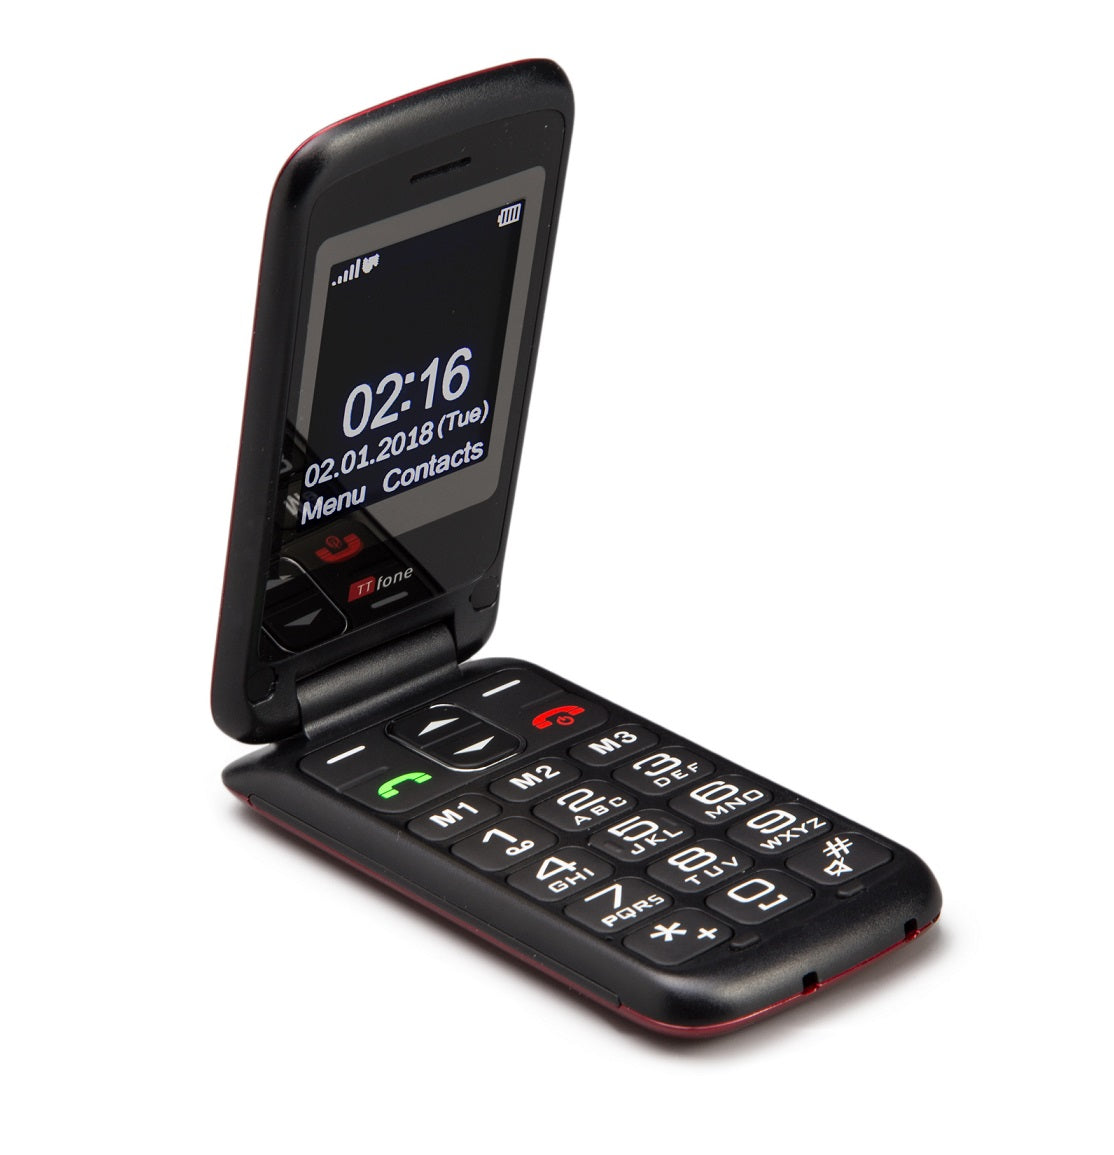 TTfone Nova TT650 easy to use mobile 